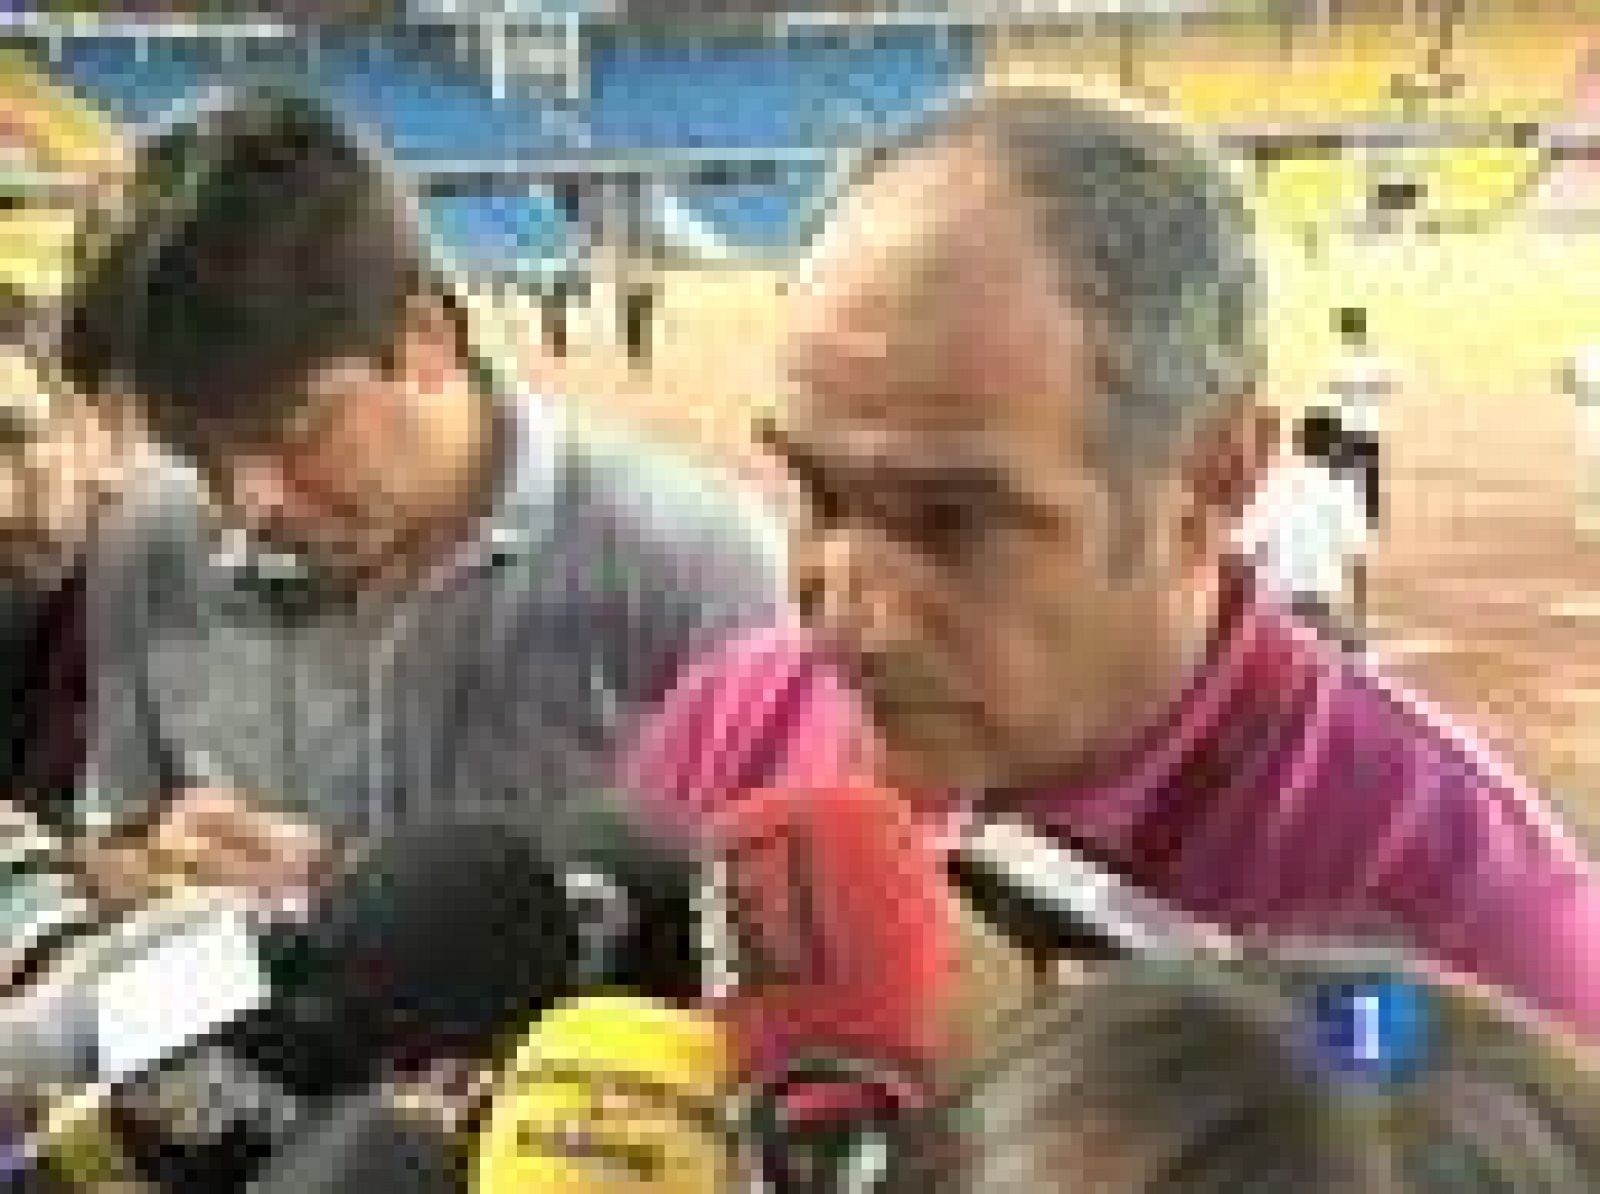 El director técnico del Barcelona, Andoni Zubizarreta, ha afirmado que les ha "sorprendido" la lista de Del Bosque y que esta es la "importancia" que la Federación da a su propia competición oficial, en referencia a la Supercopa, que se juega sólo tr